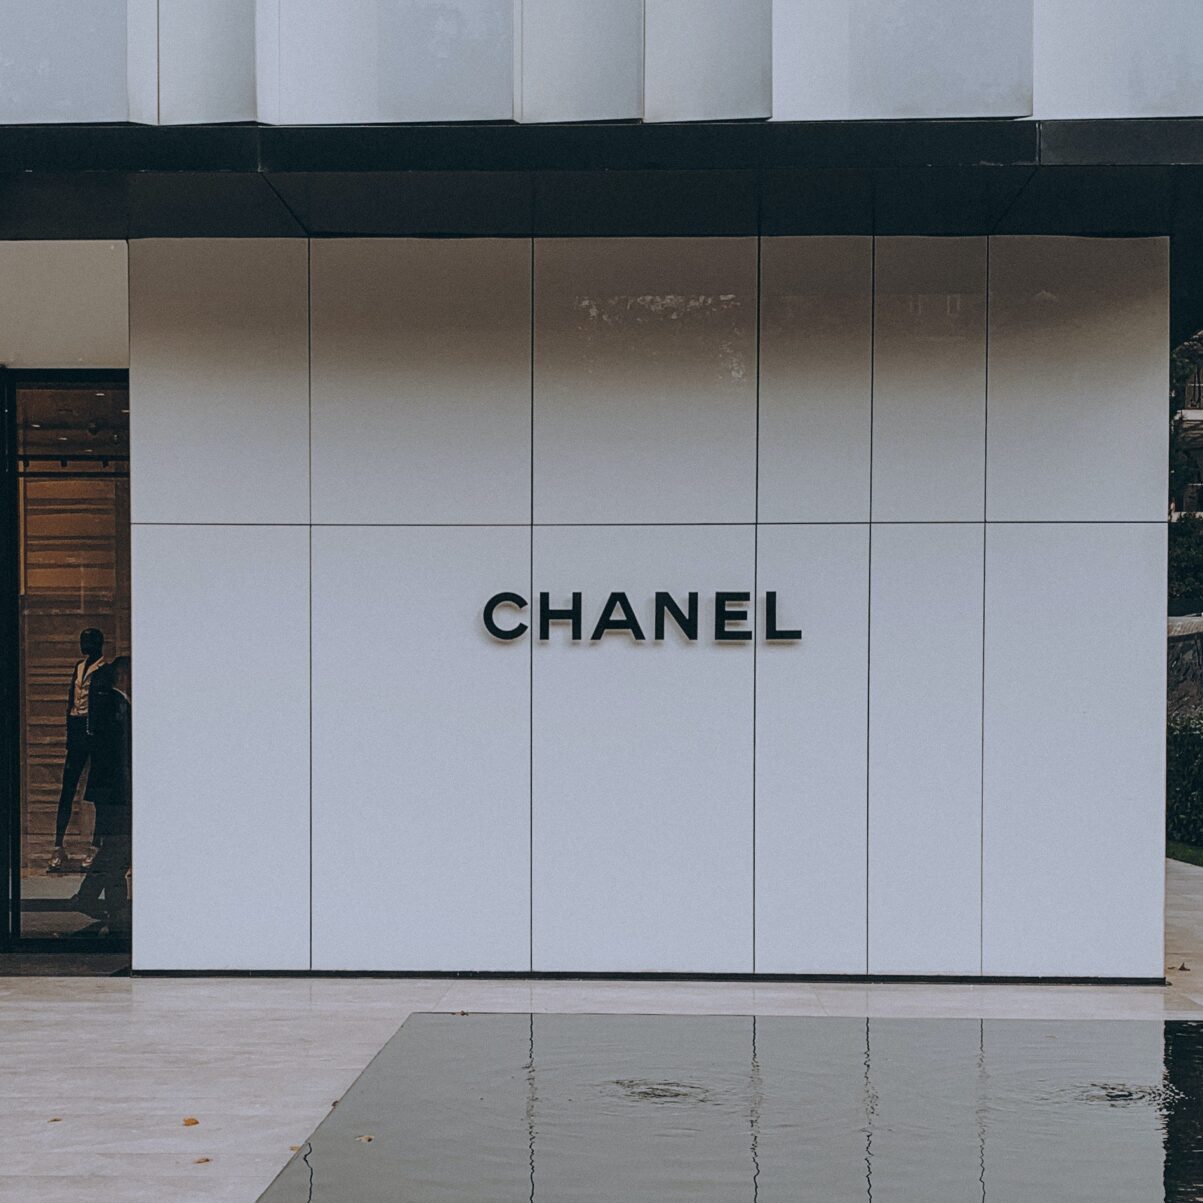 Timothy Chalamet became a Chanel ambassador